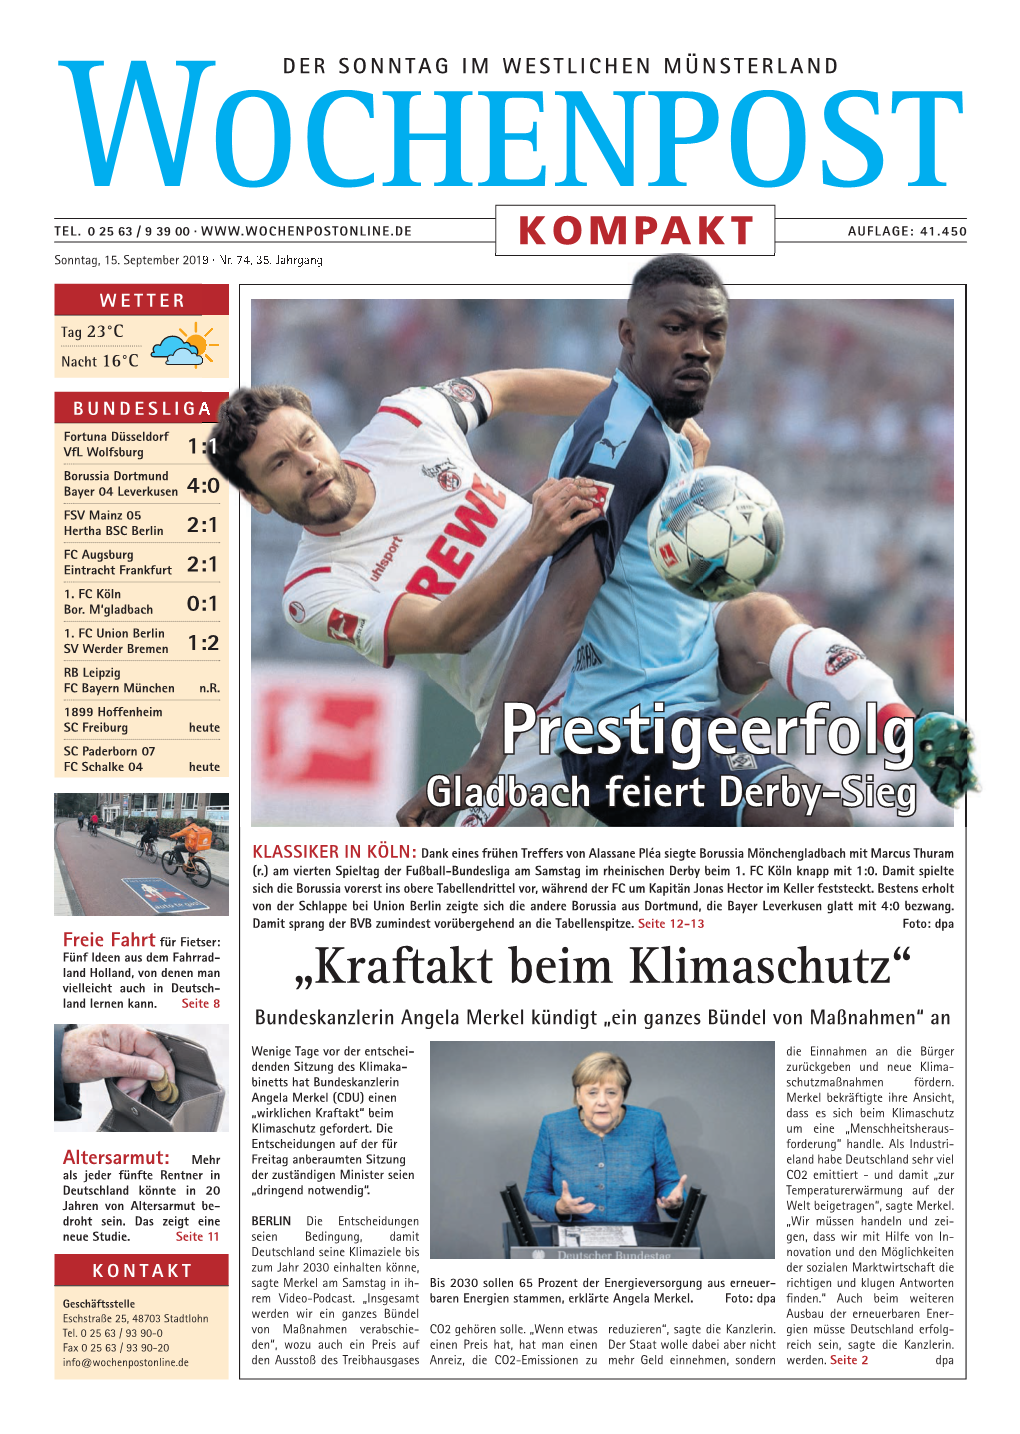 Prestigeerfolg FC Schalke 04 Heute Gladbach Feiert Derby-Sieg